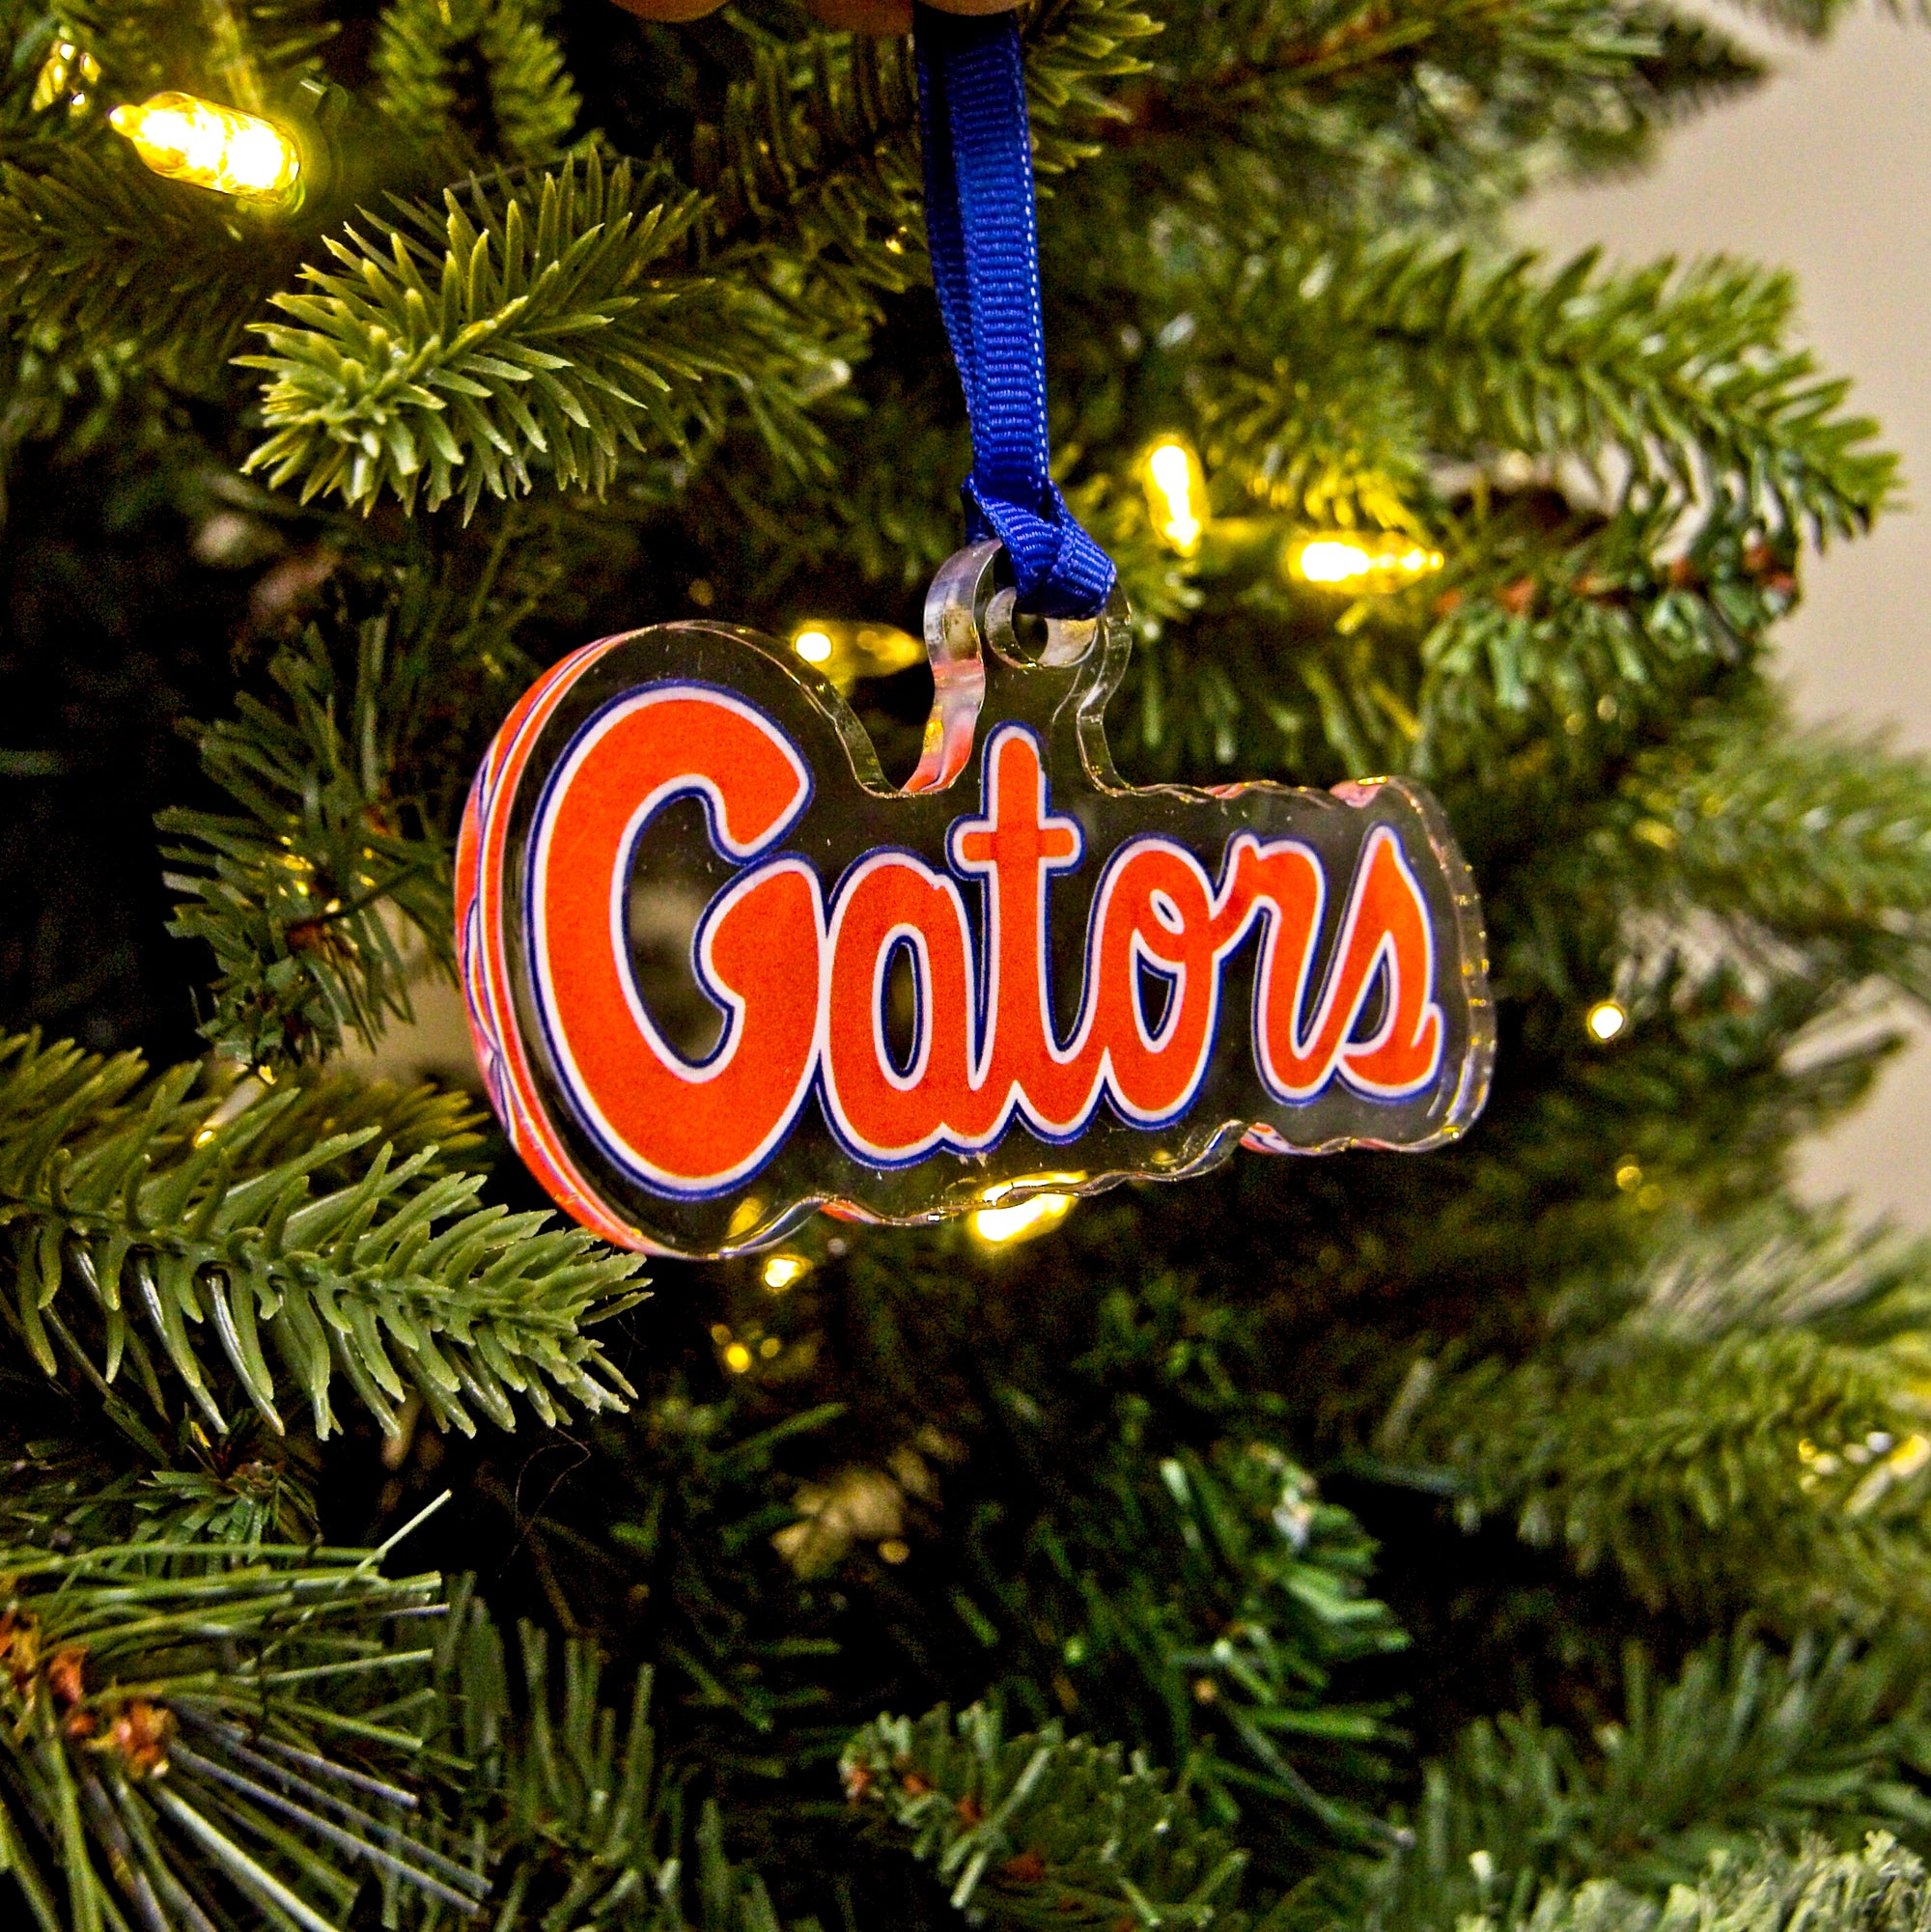 Florida Gators - Gators Ornament & Bag Tag